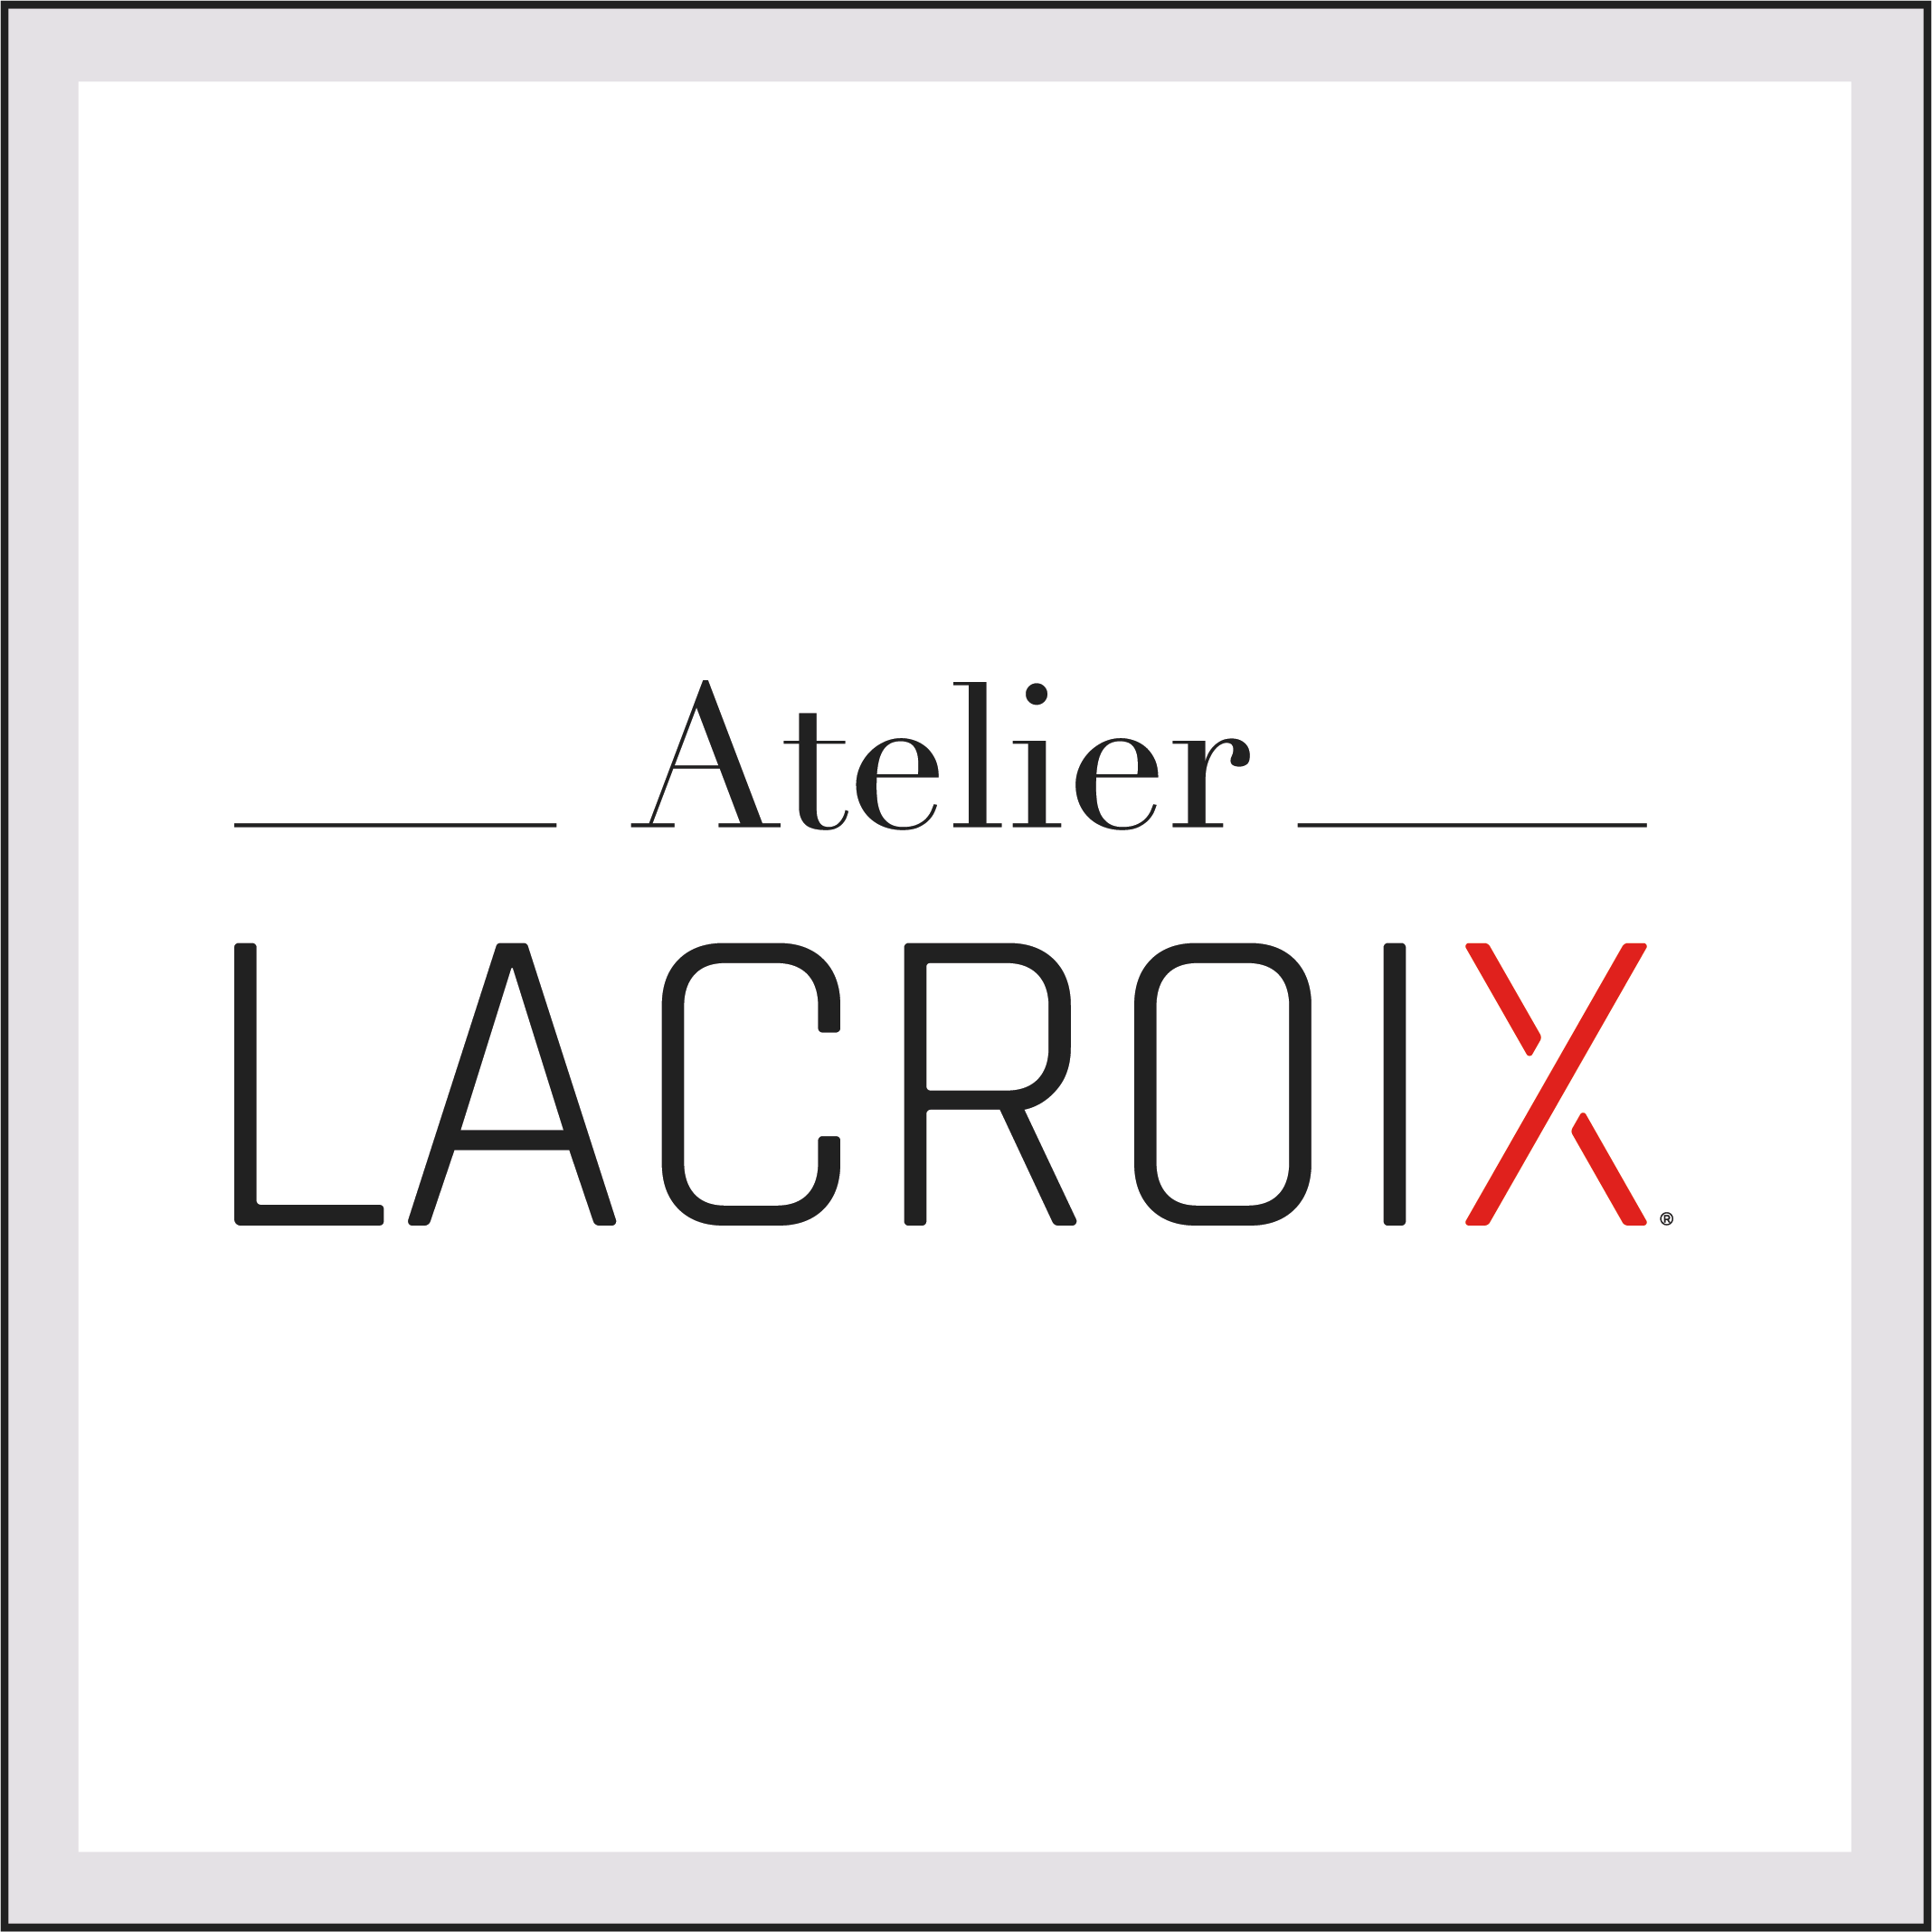 Atelier Lacroix